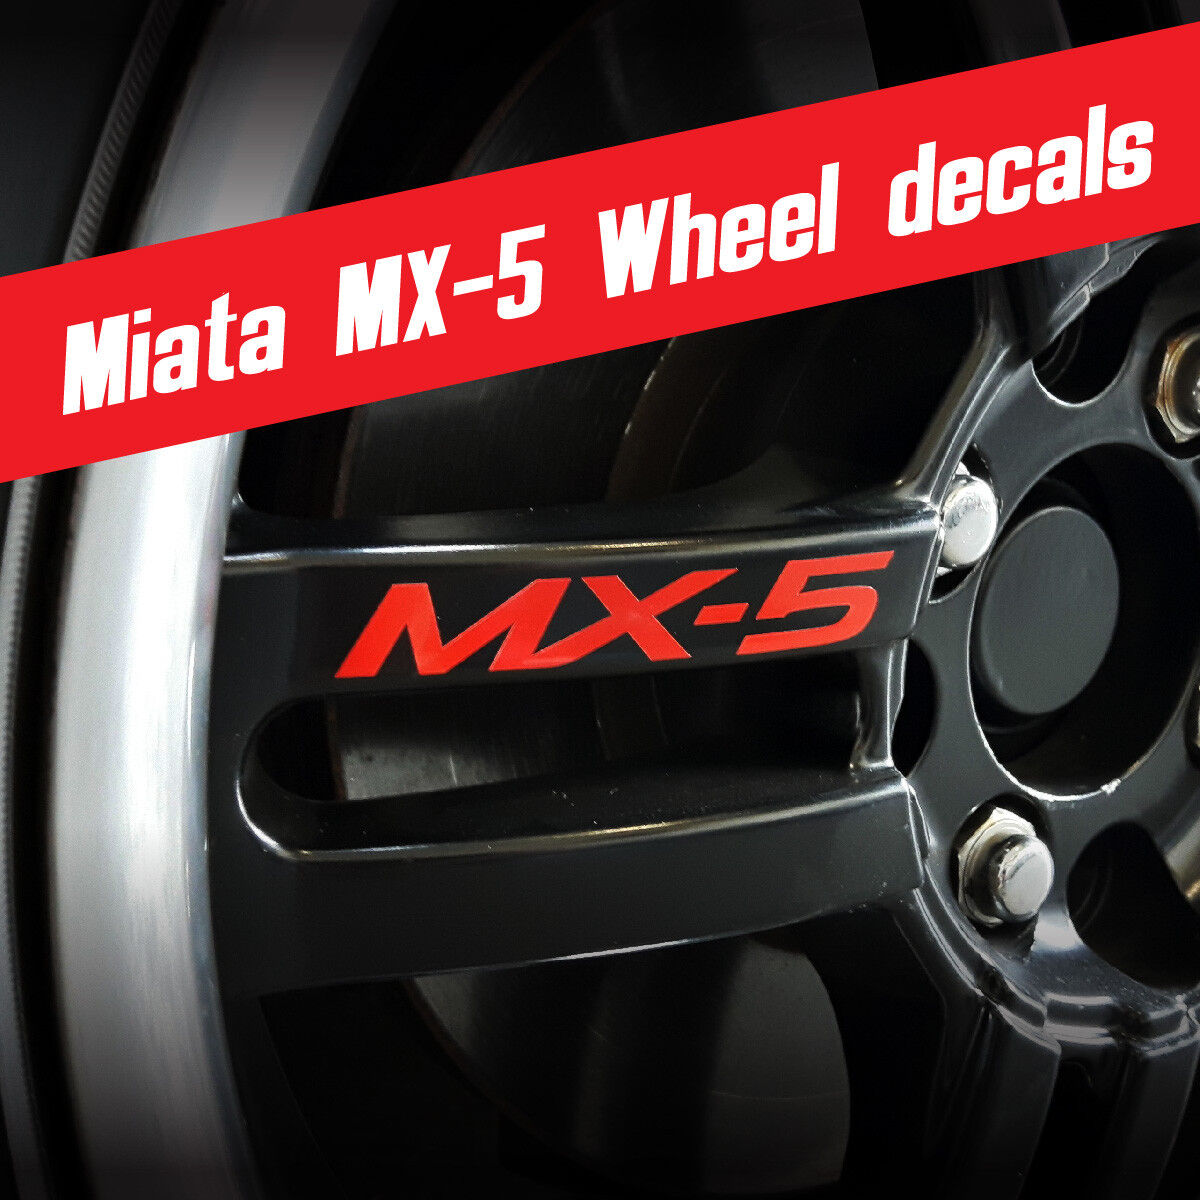 Miata Wheel graphics MX-5 Stickers fits: Mazda Miata MX-5 *Multiple colors